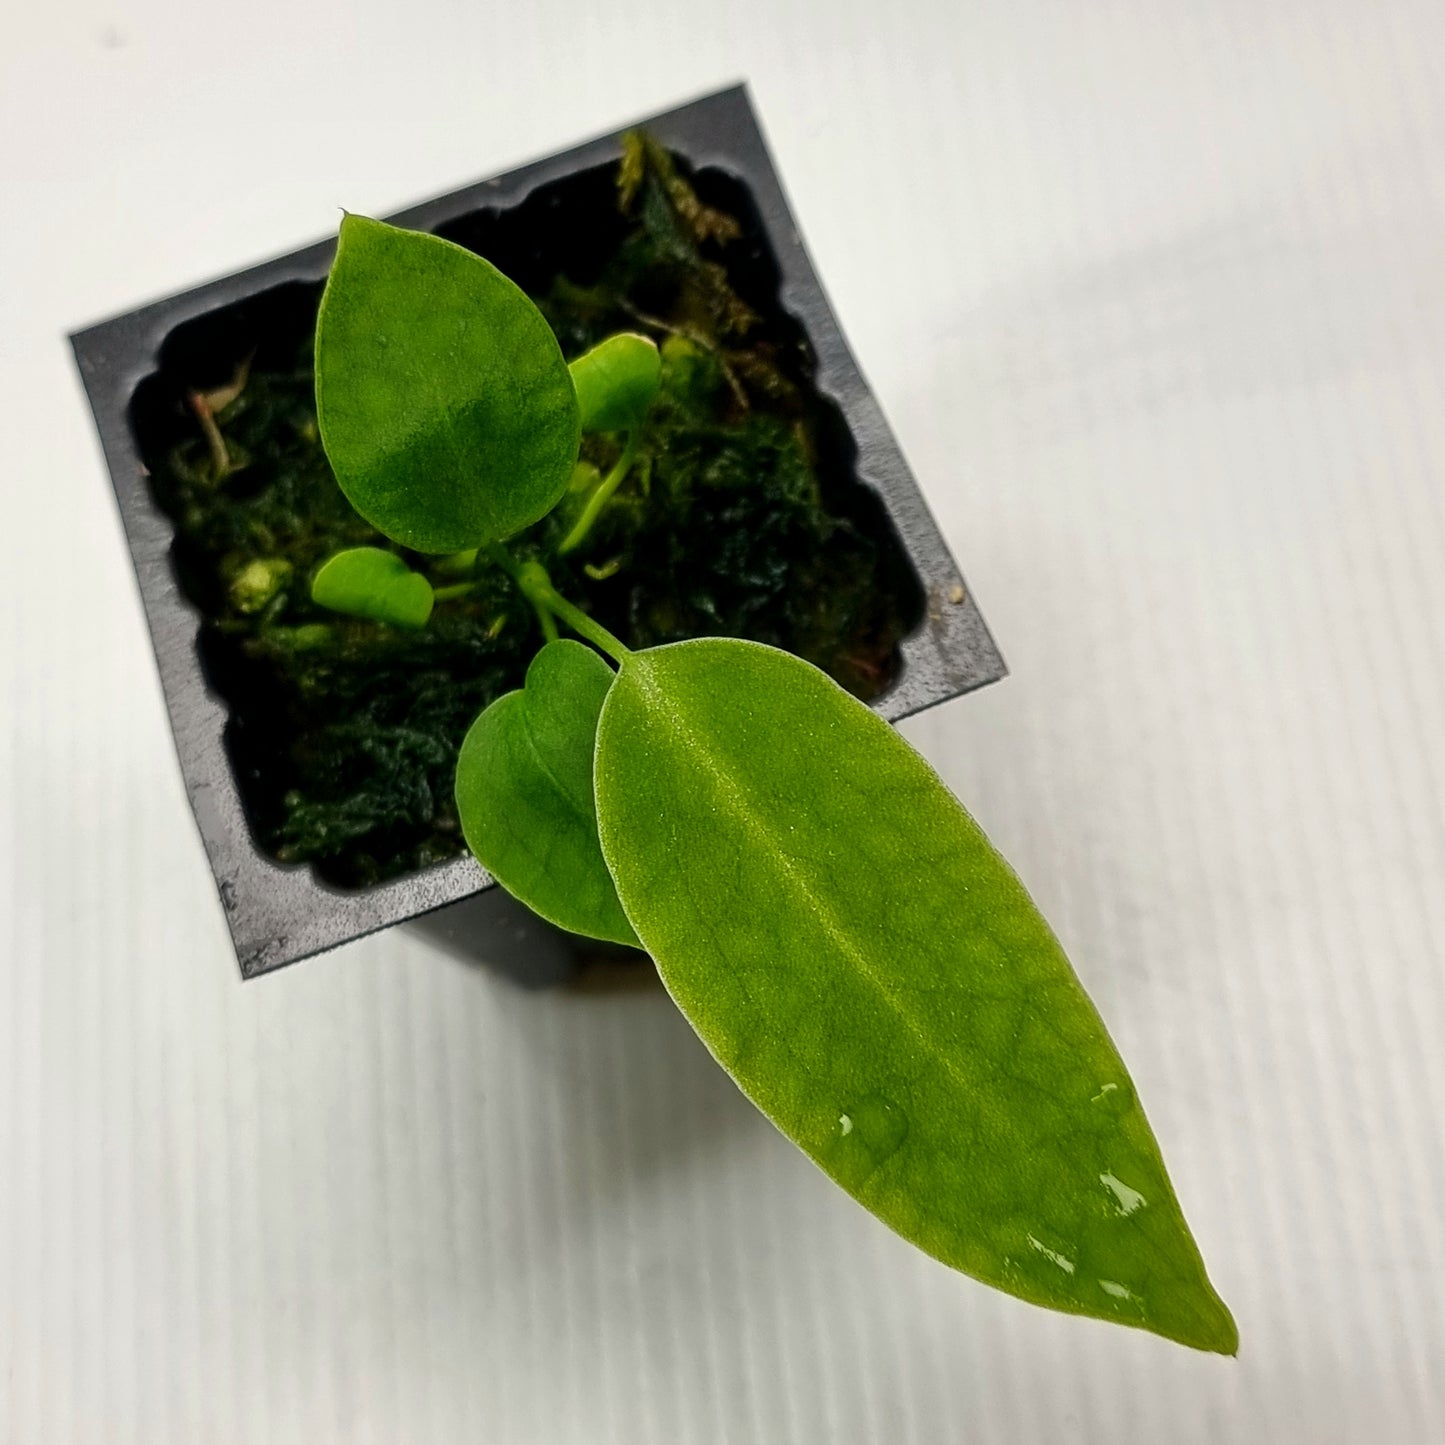 rare Anthurium warocqueanum for sale in Perth Australia